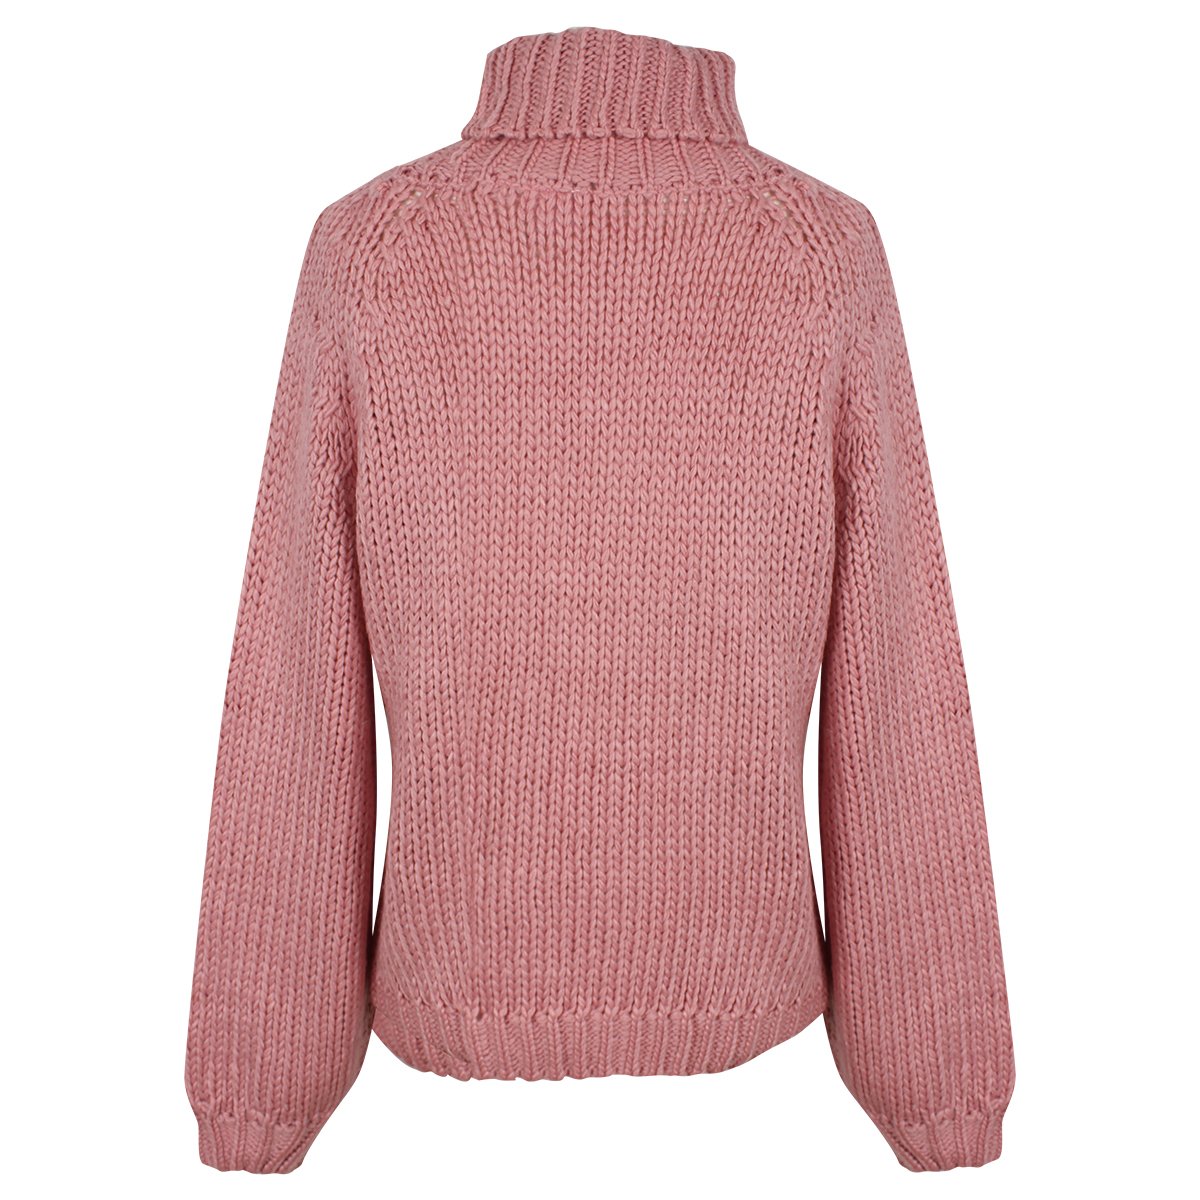 suéter rosa cuello alto tejido